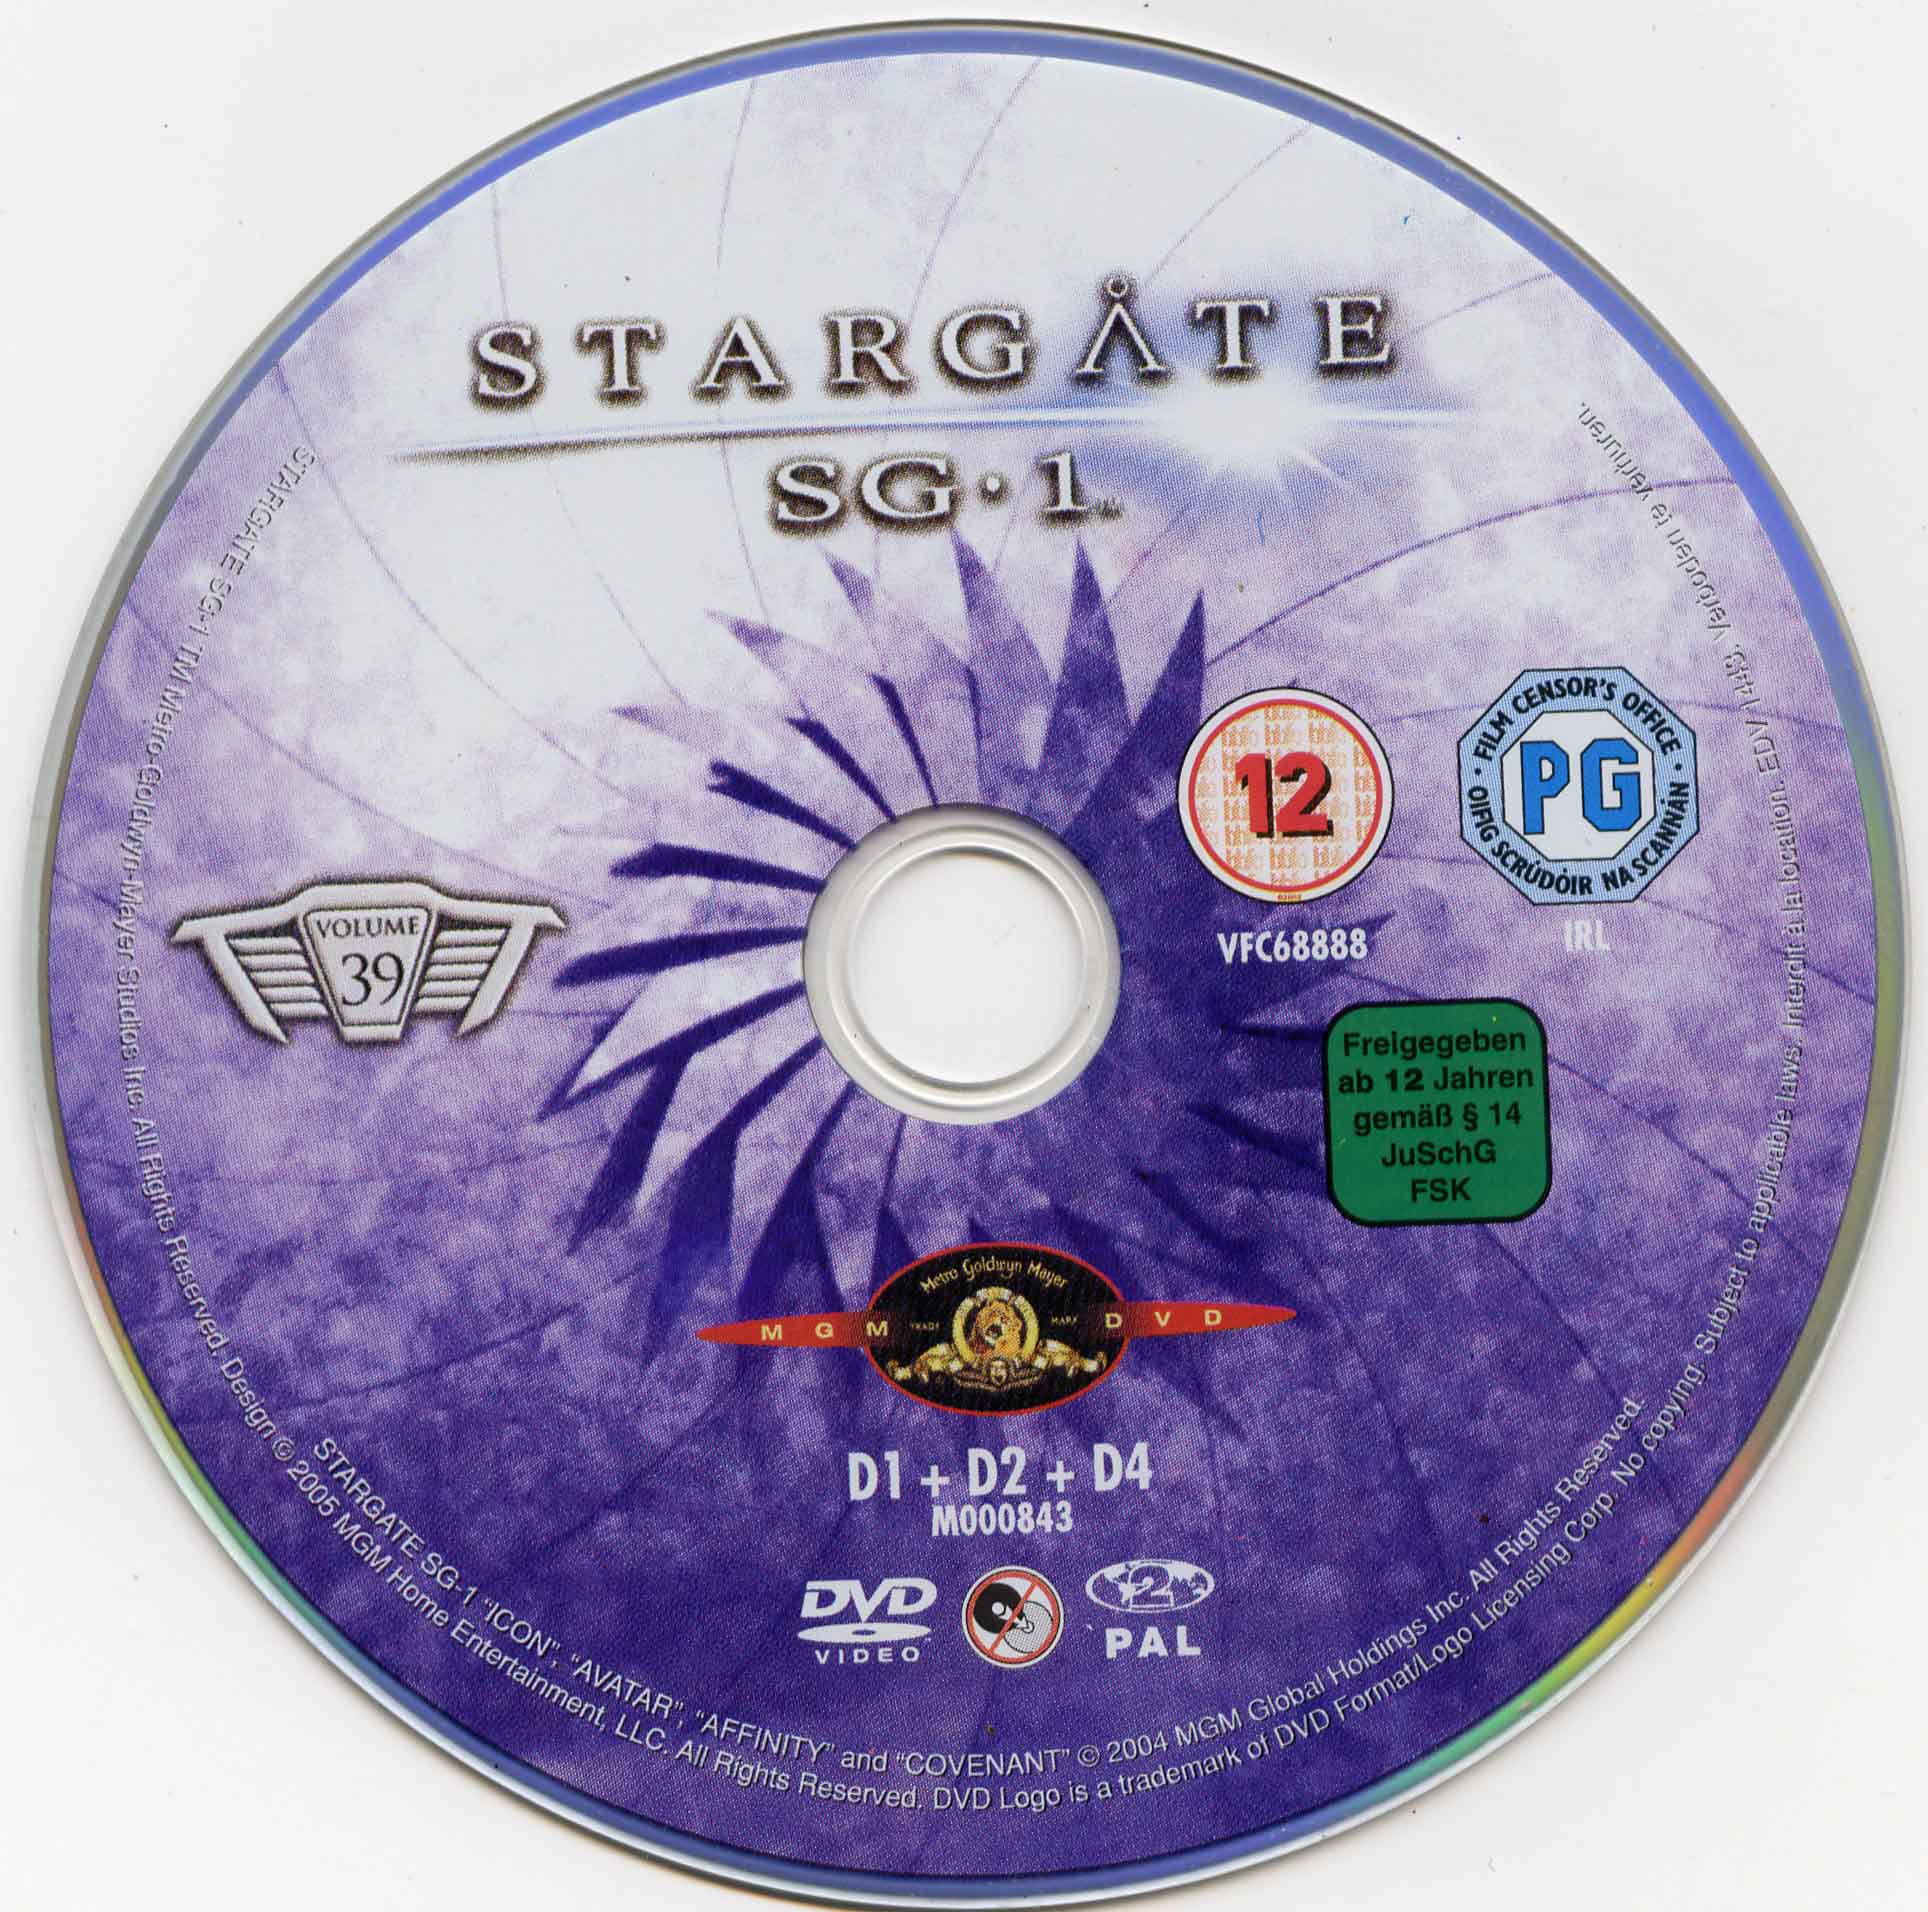 Stargate SG1 vol 39